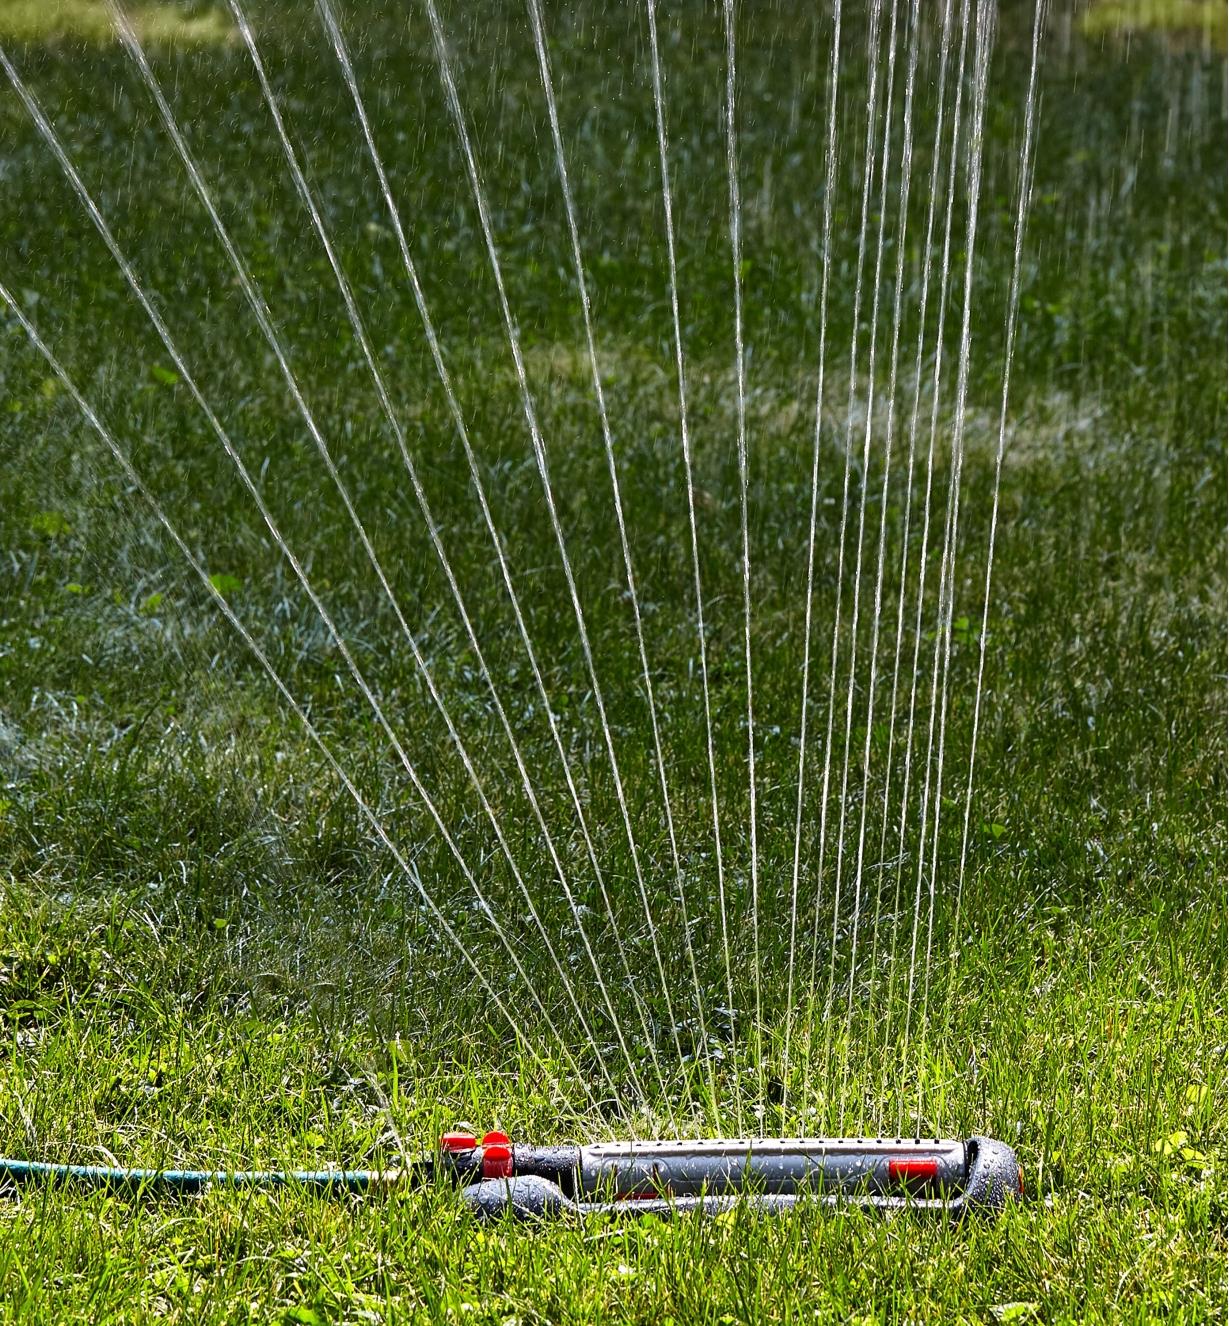 Arroseur oscillant à réglages multiples aspergeant de l'eau sur une pelouse par un jet mi-droit mi-éventail vers la gauche